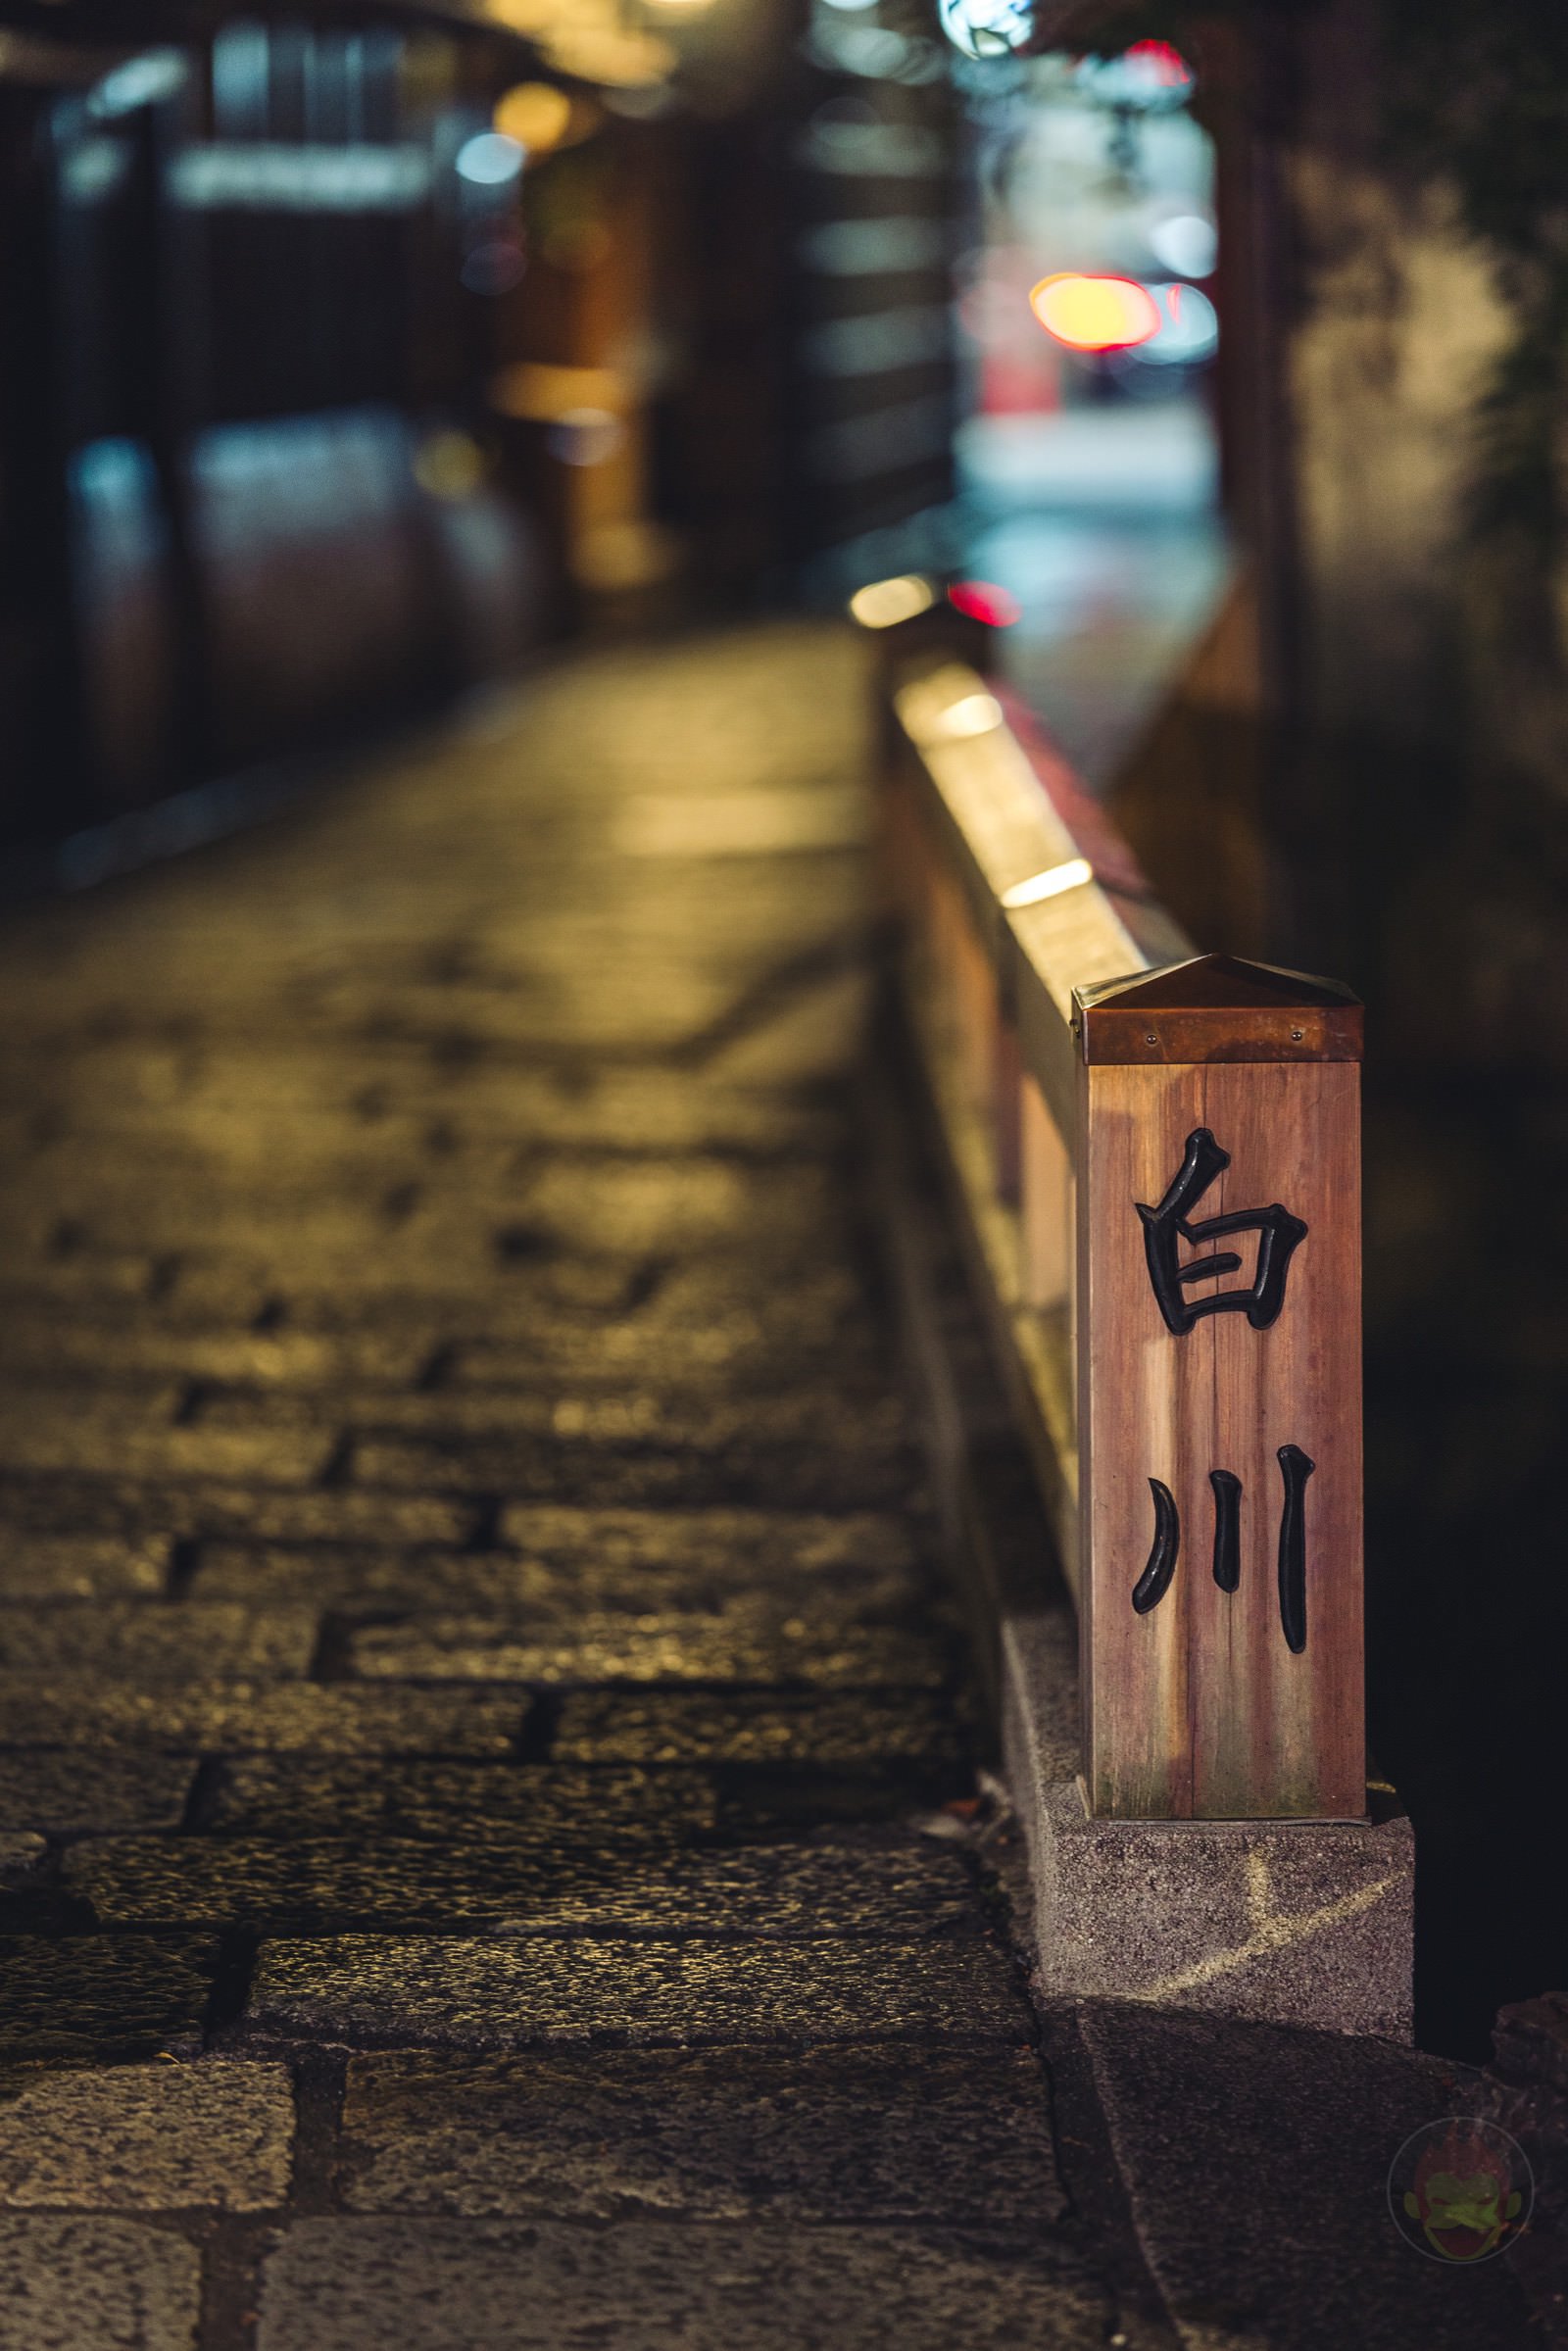 Kyoto Street Snap at midnight 14